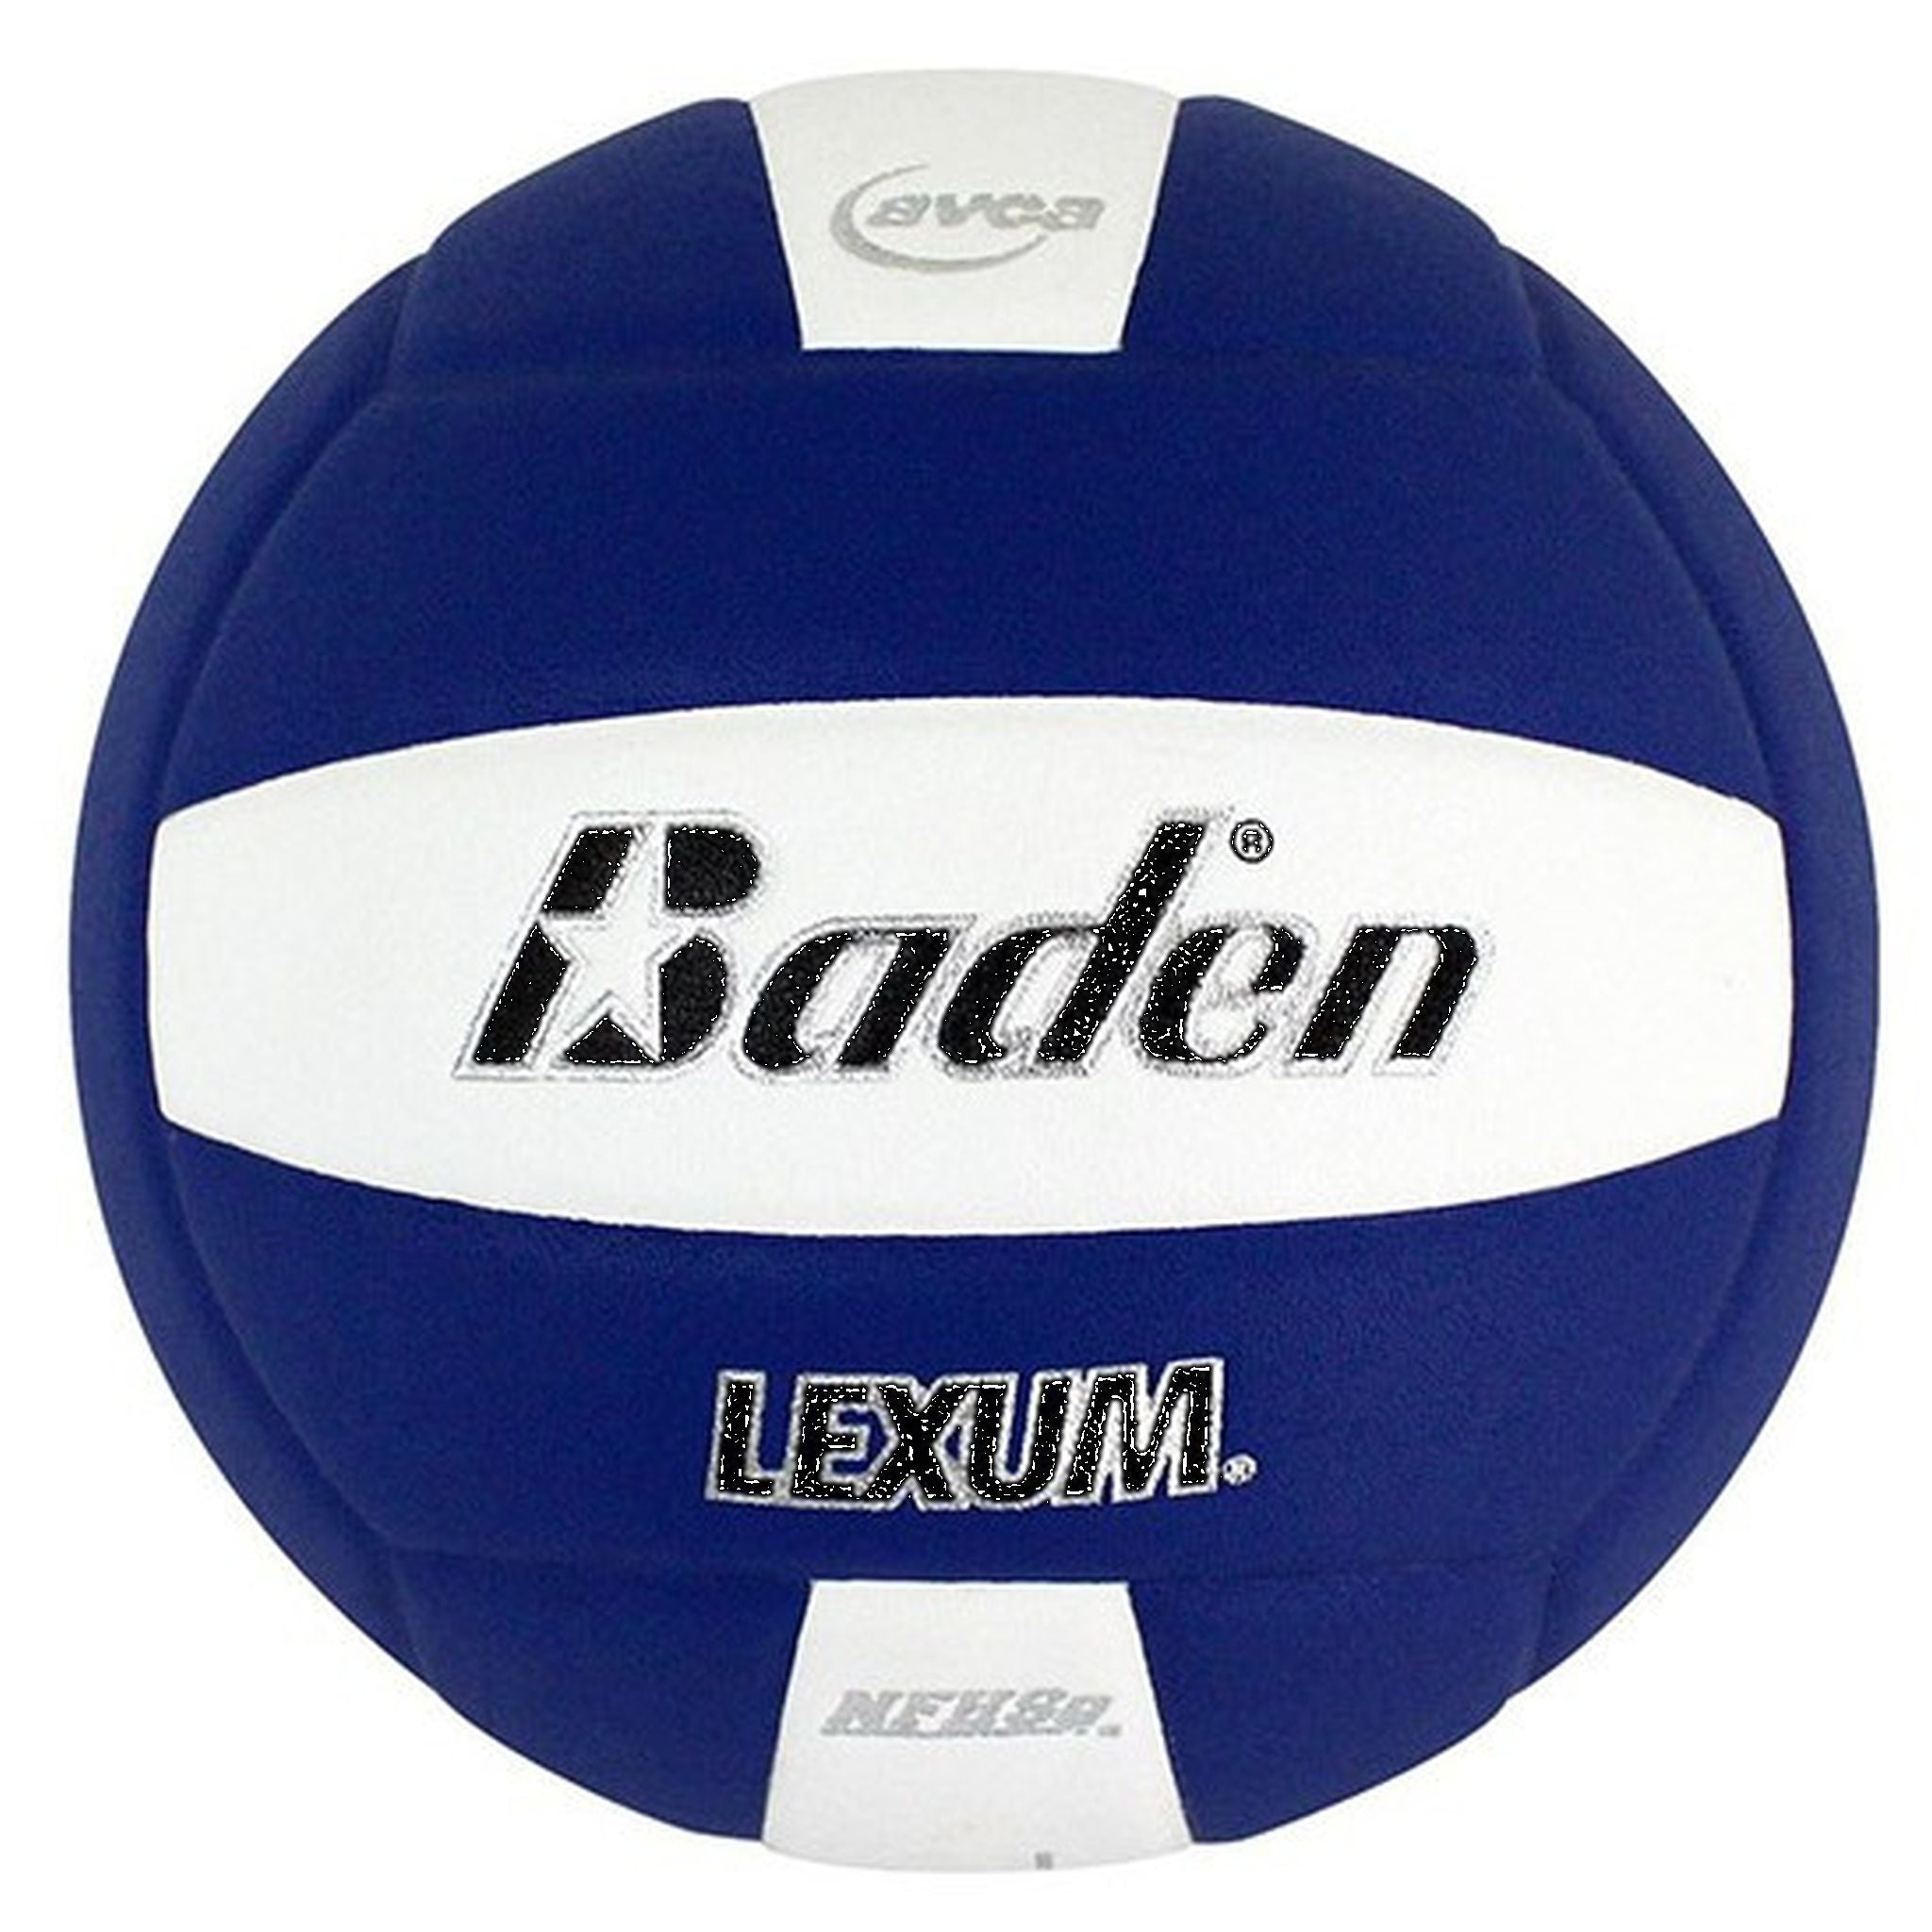 Baden Lexum Volleyball